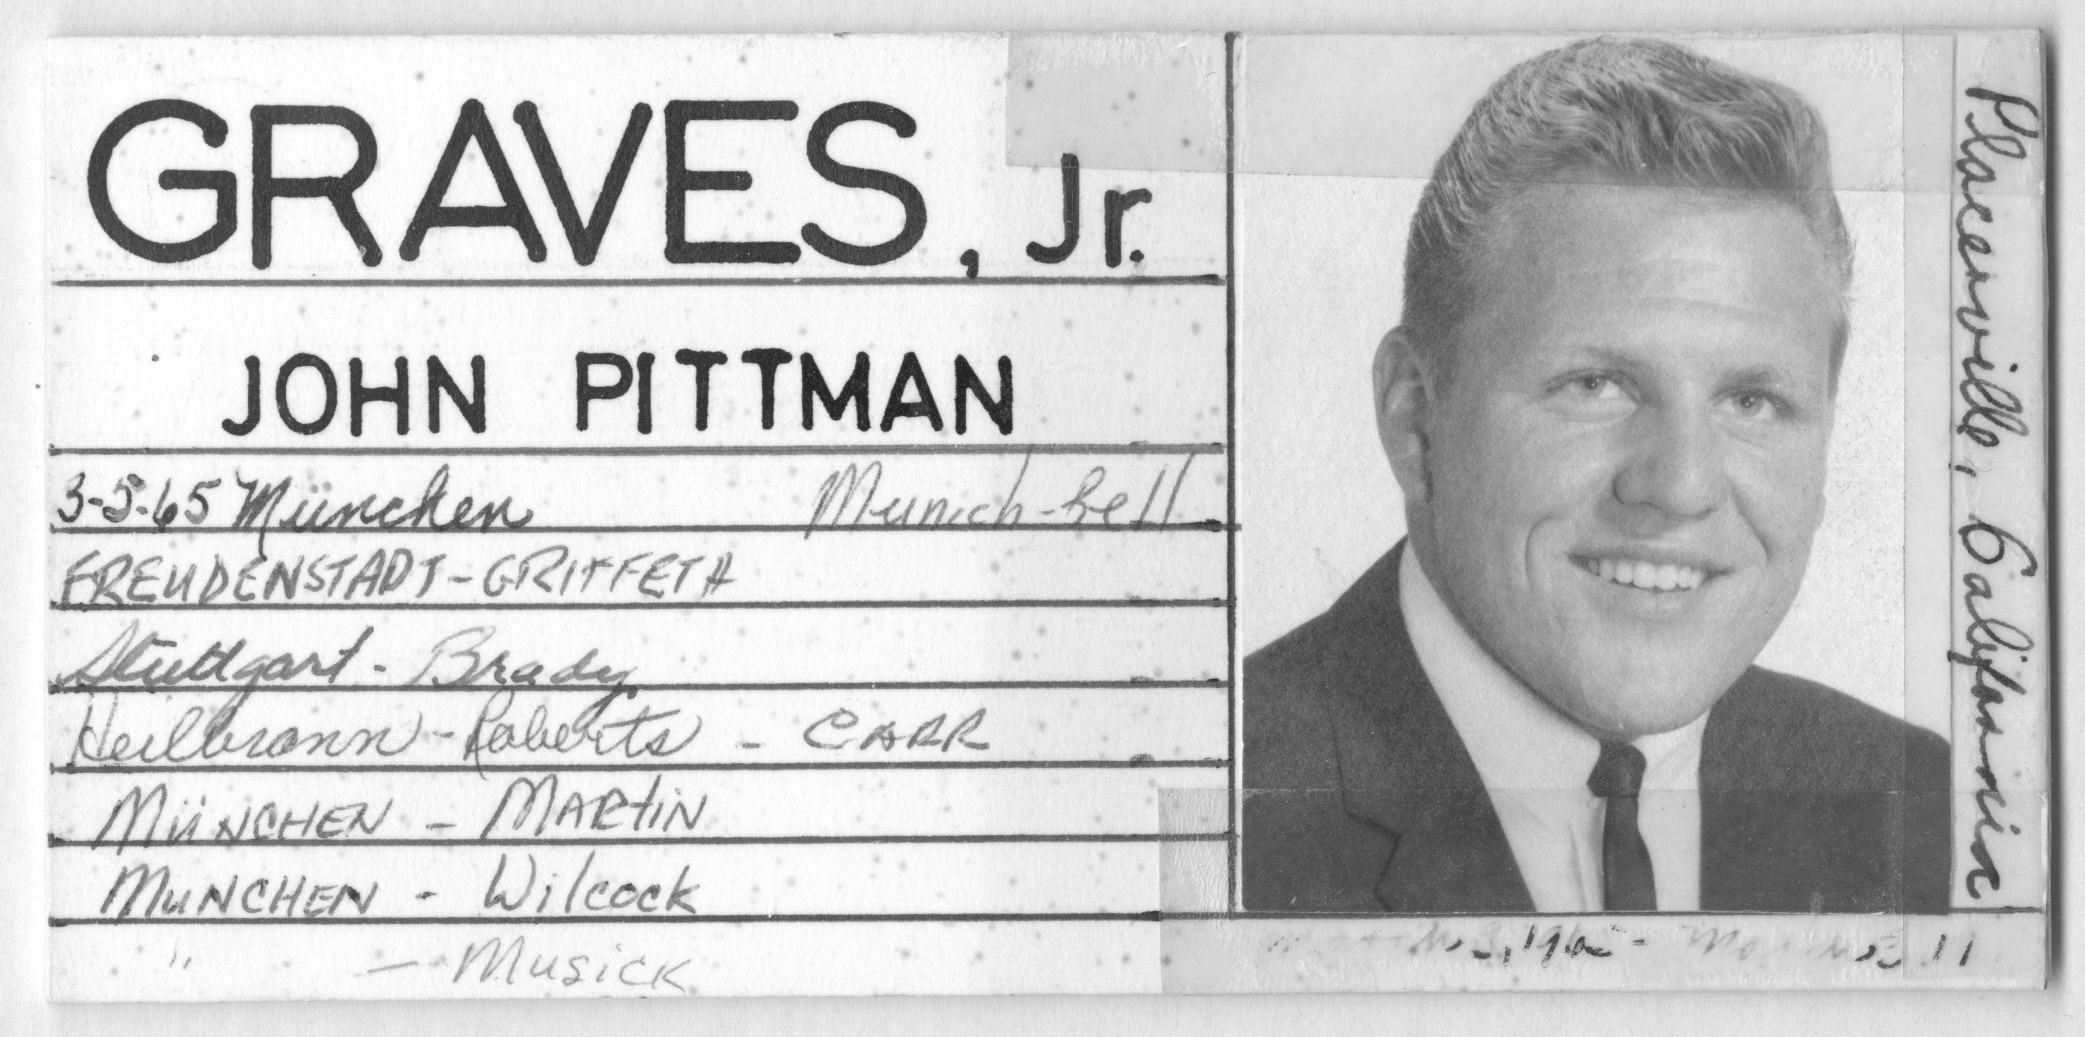 Graves Jr., John Pittman